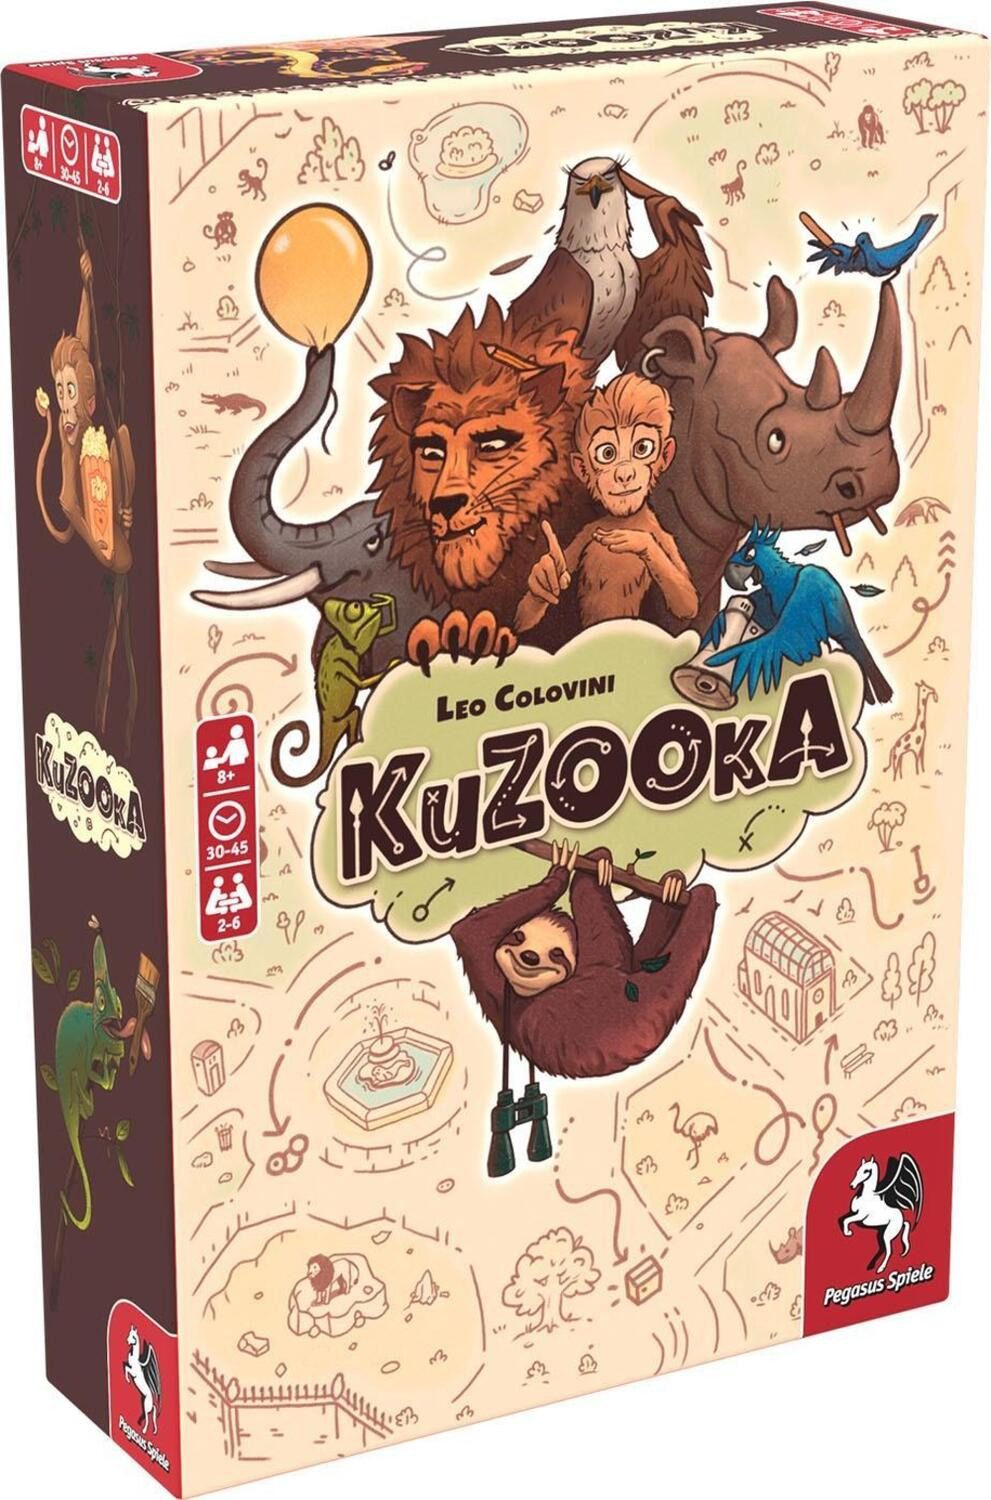 Pegasus Spiele Spiel, KuZOOka